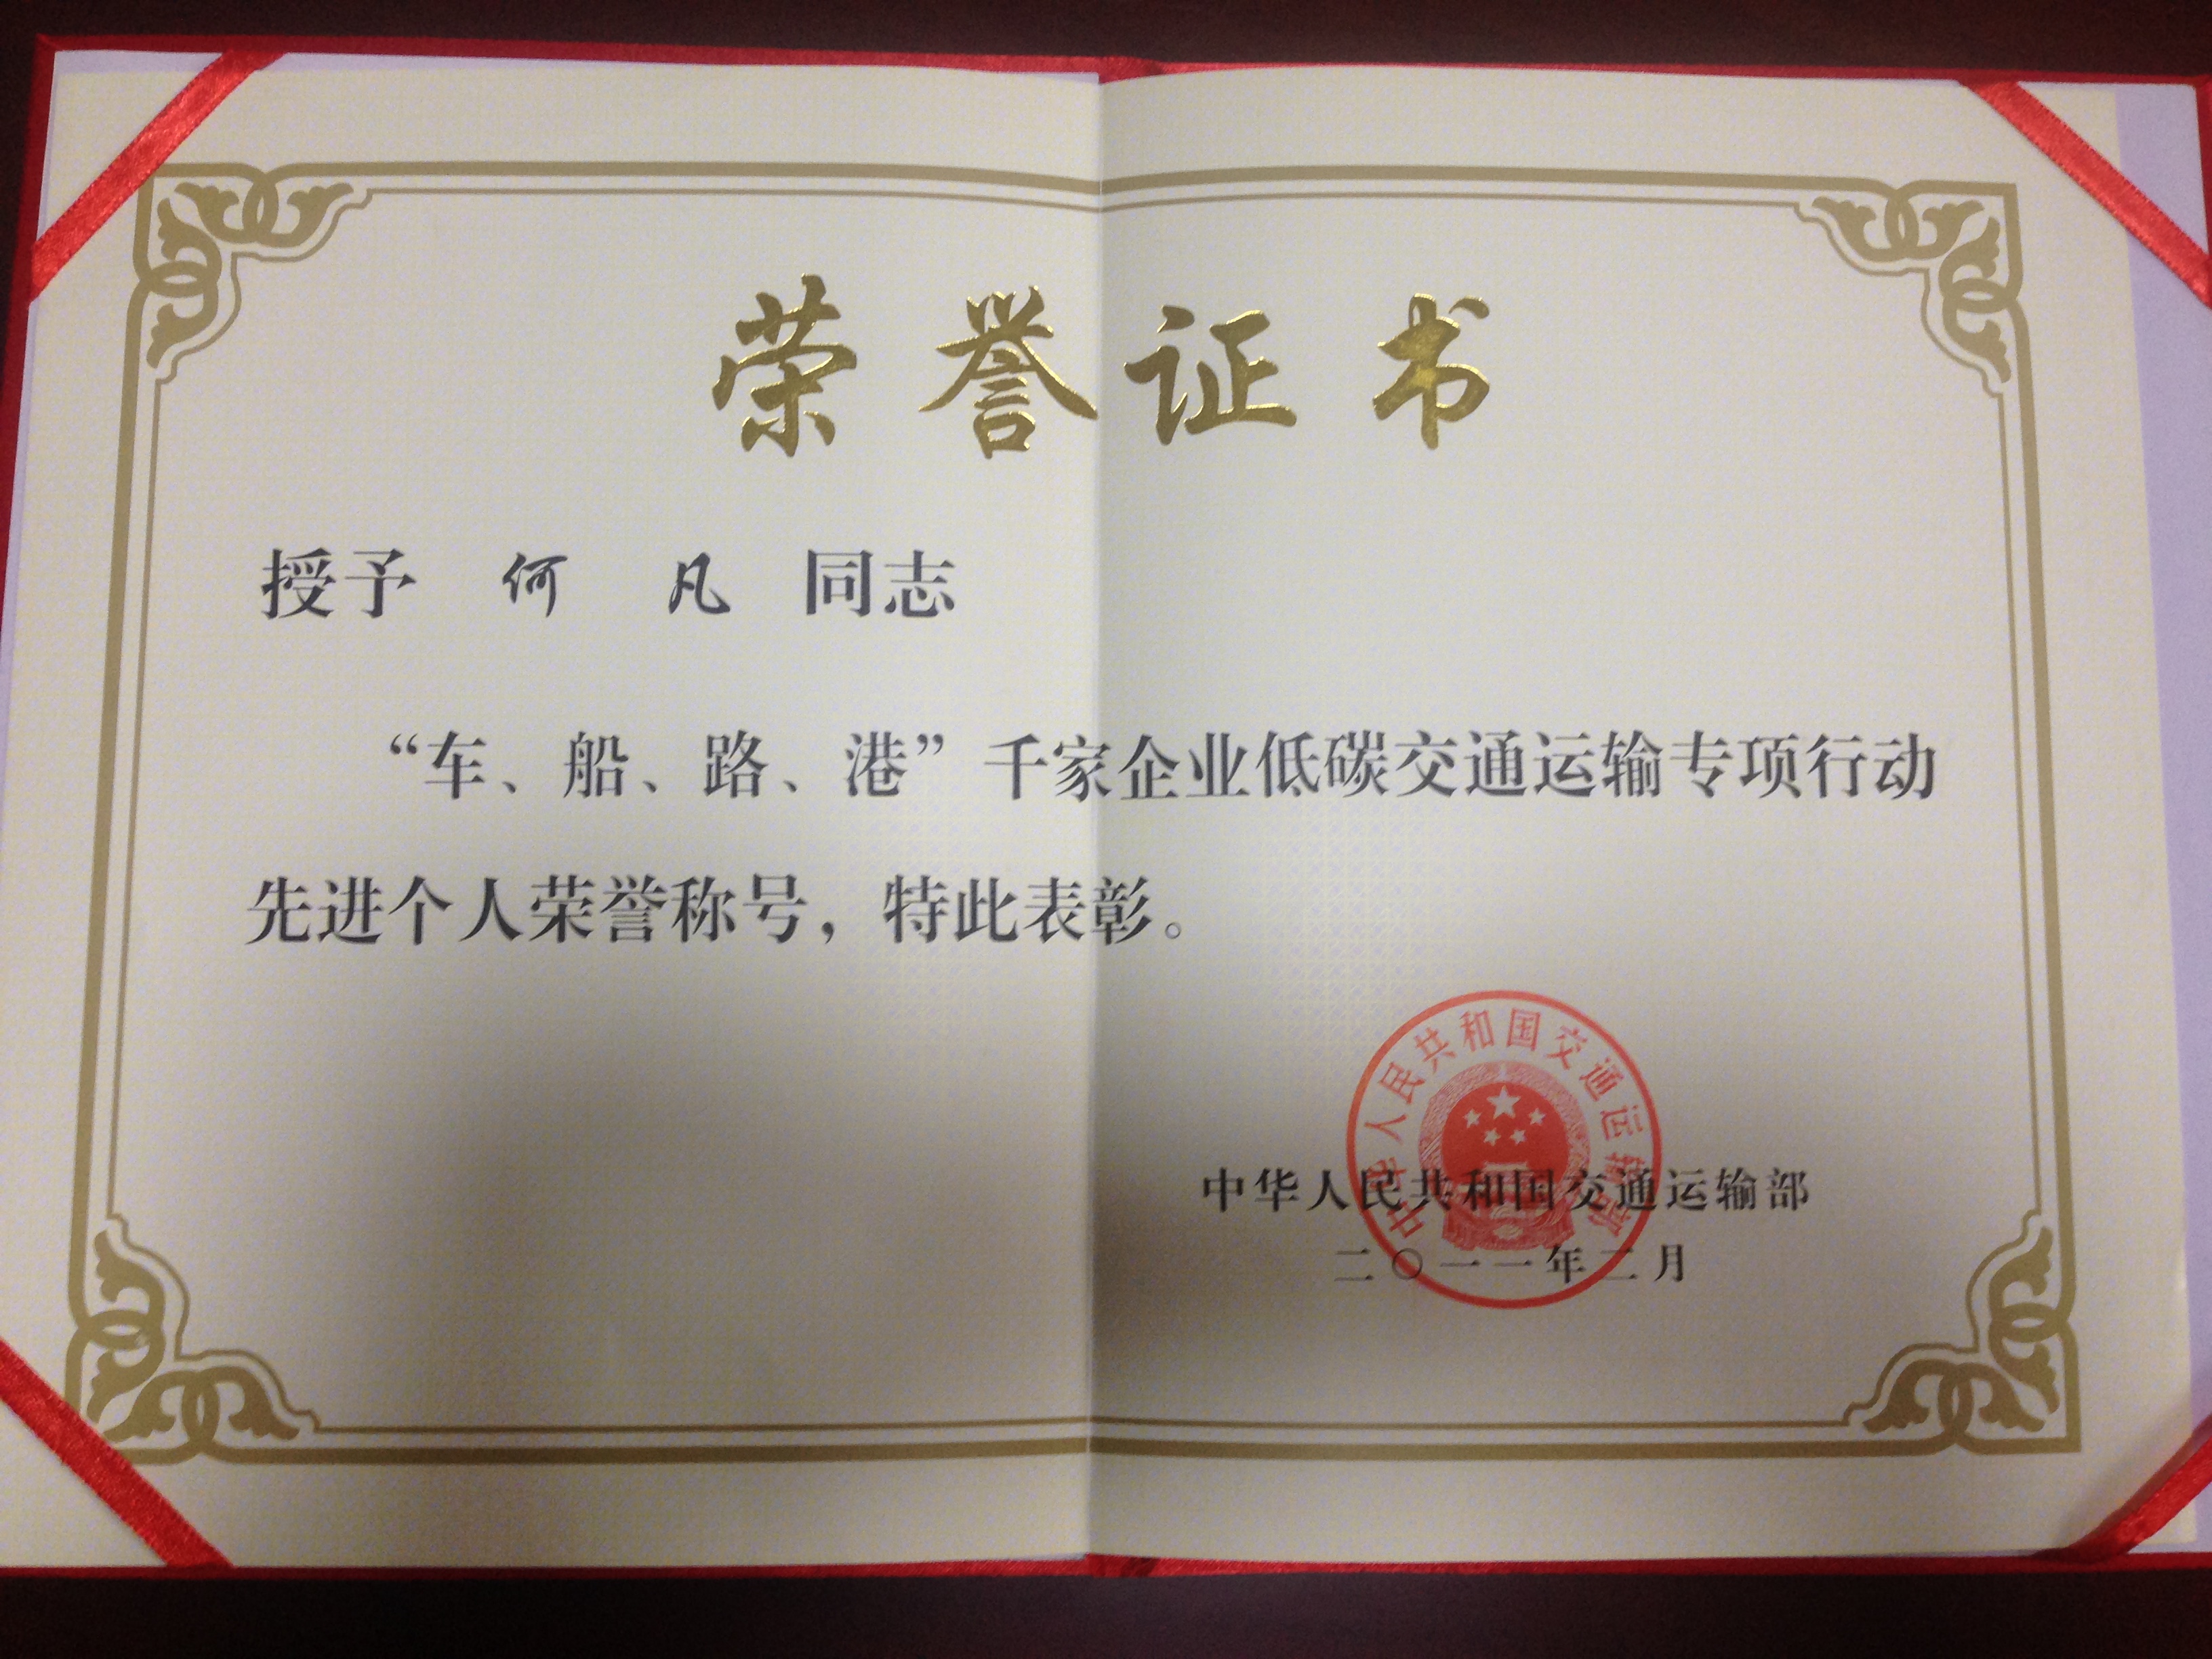 天津班车租赁公司及法人荣誉证书(图21)